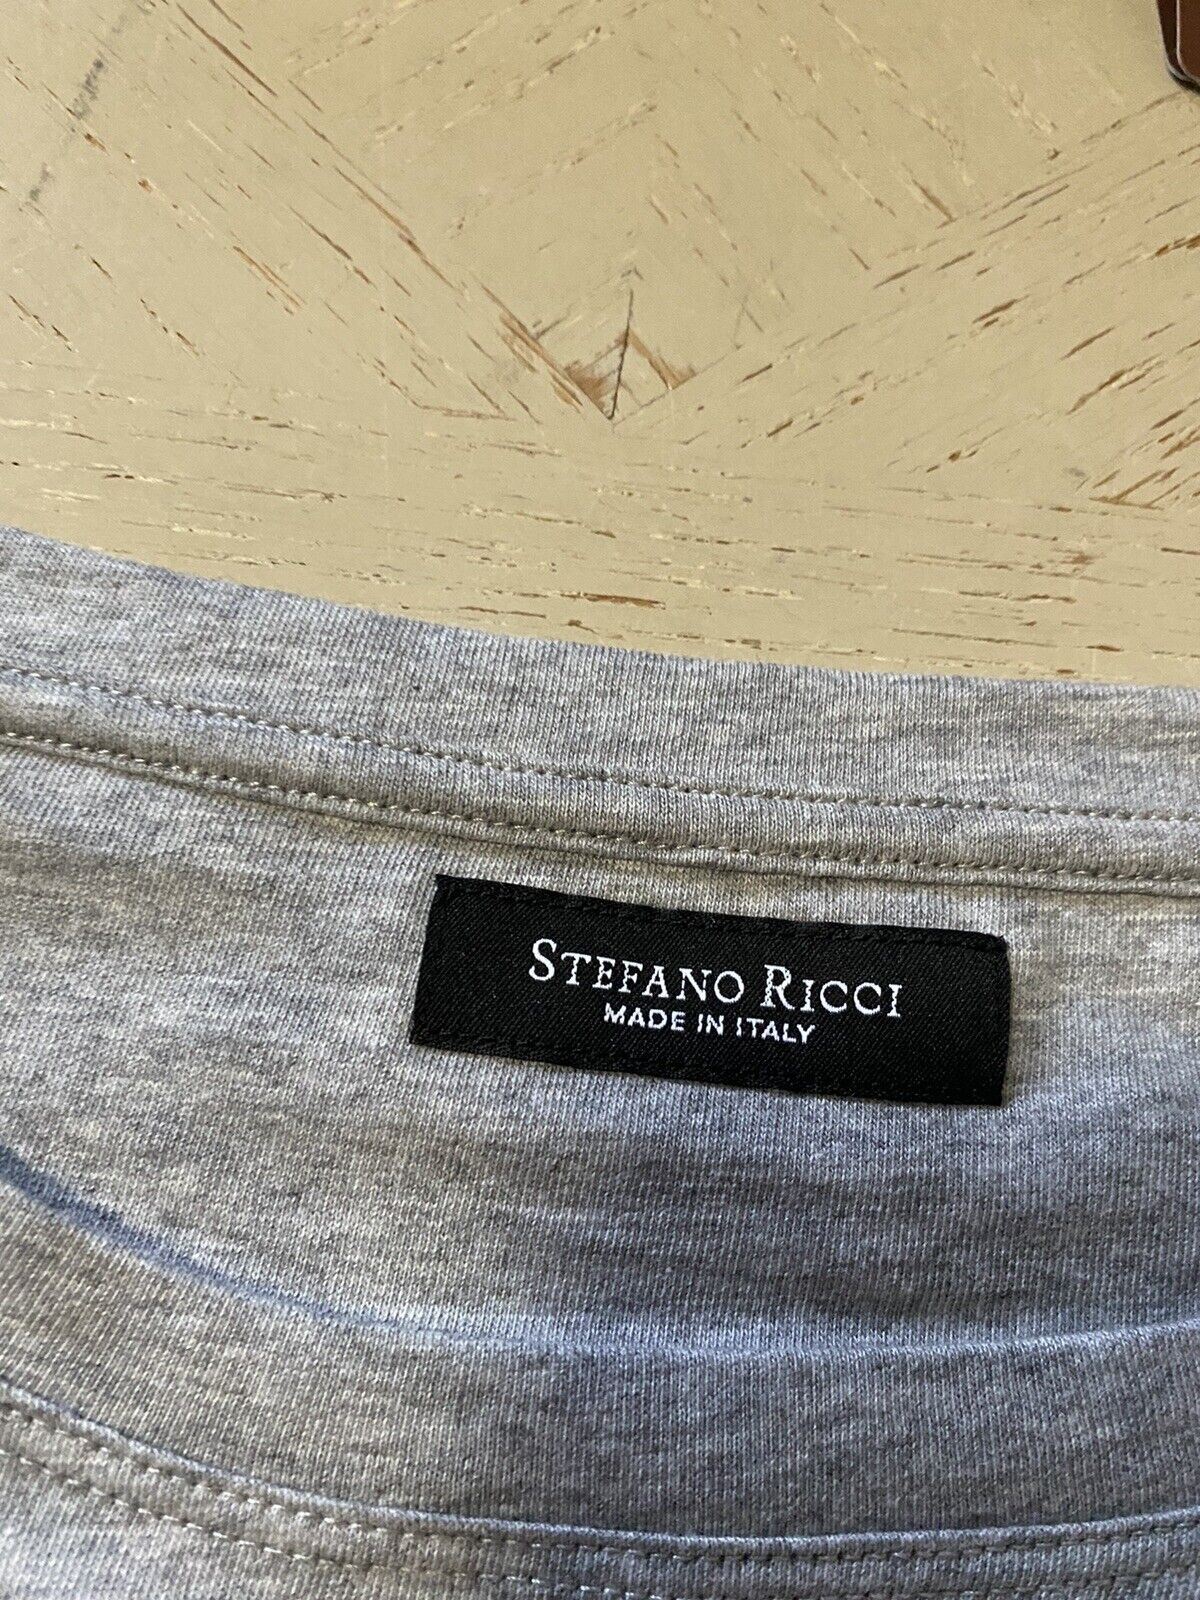 Neu mit Etikett: Stefano Ricci Herren-T-Shirt aus Baumwolle und Modal, Grau, Größe XL US (2XL Eu)